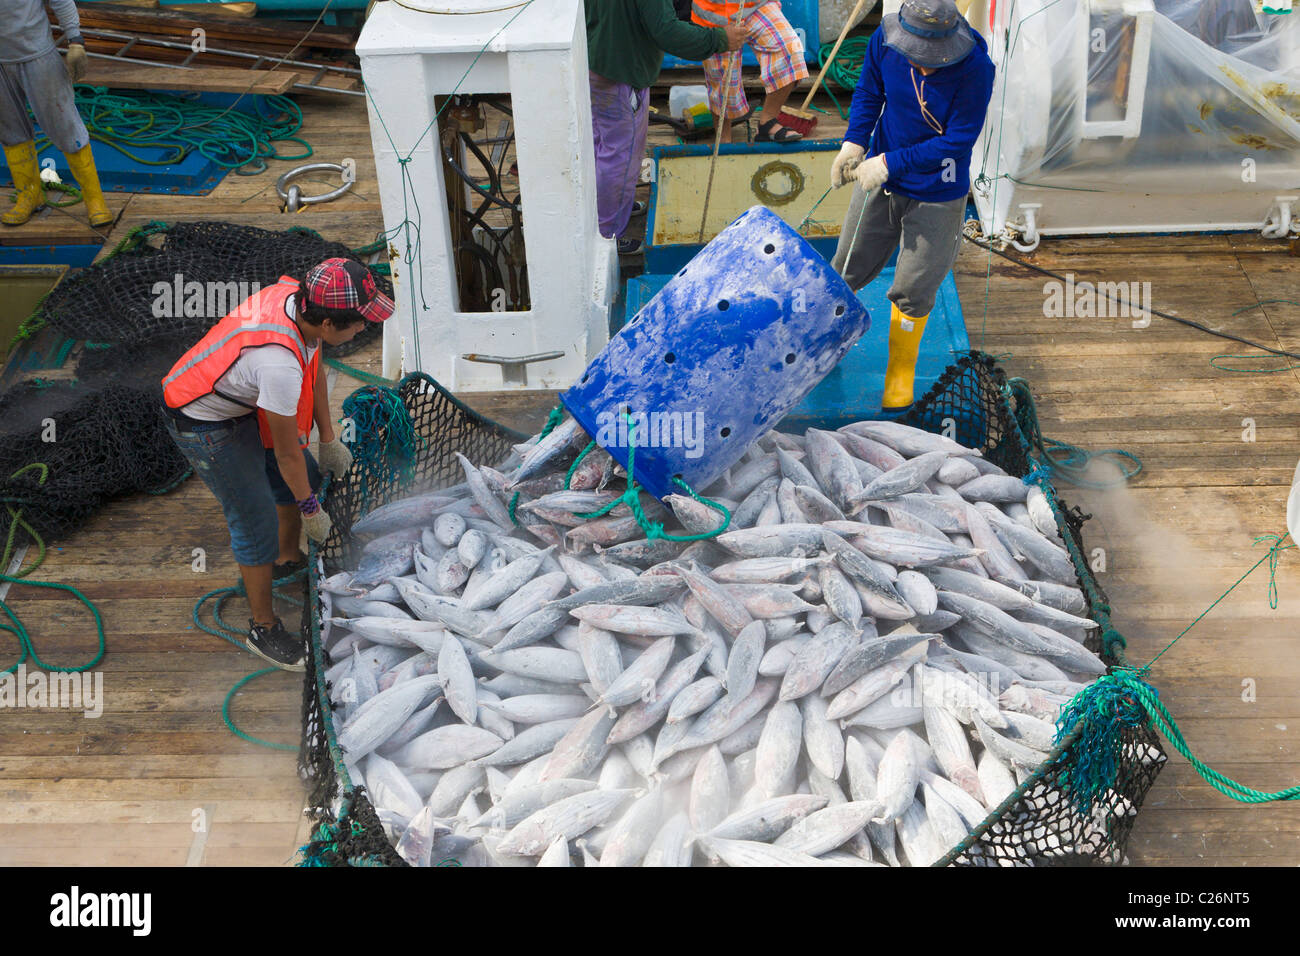 Elles sont déchargées de thon bateau de pêche, Manta, Equateur Banque D'Images